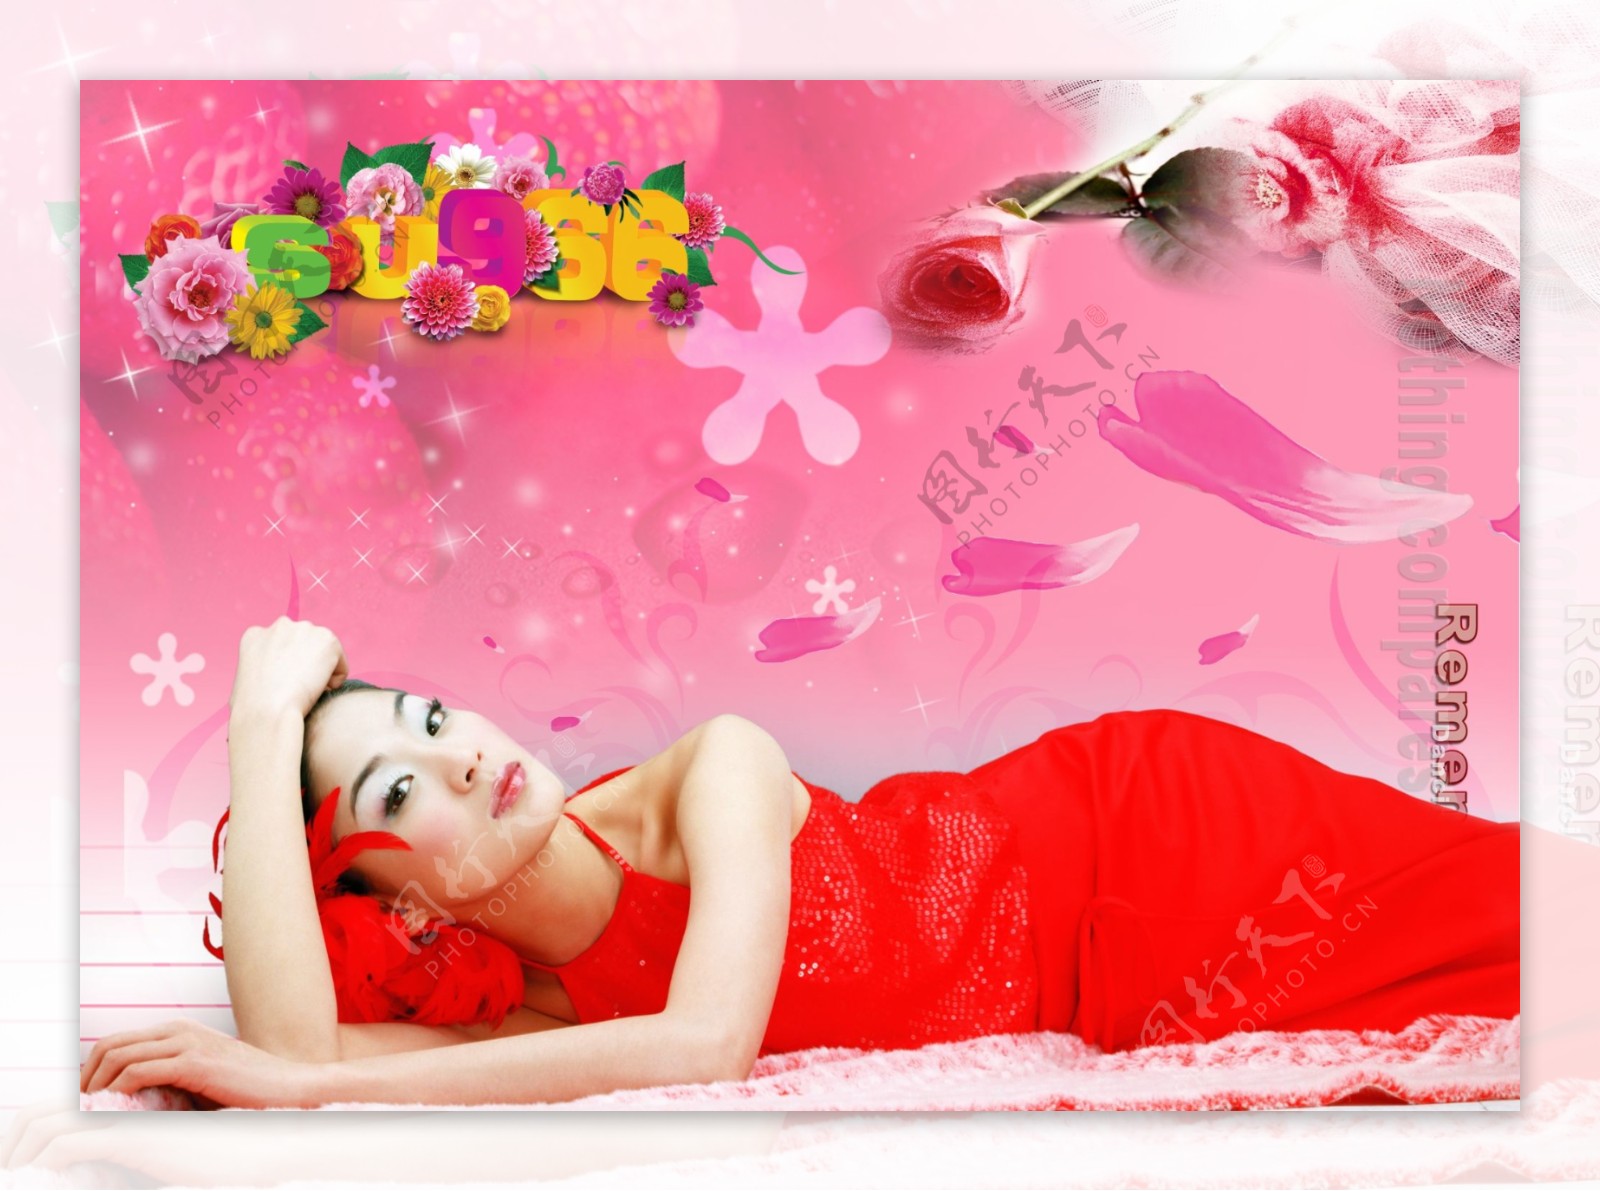 花瓣代言人美女女子躺着的人玫瑰星星宣传促销彩页DMpsd素材PSD设计源文件